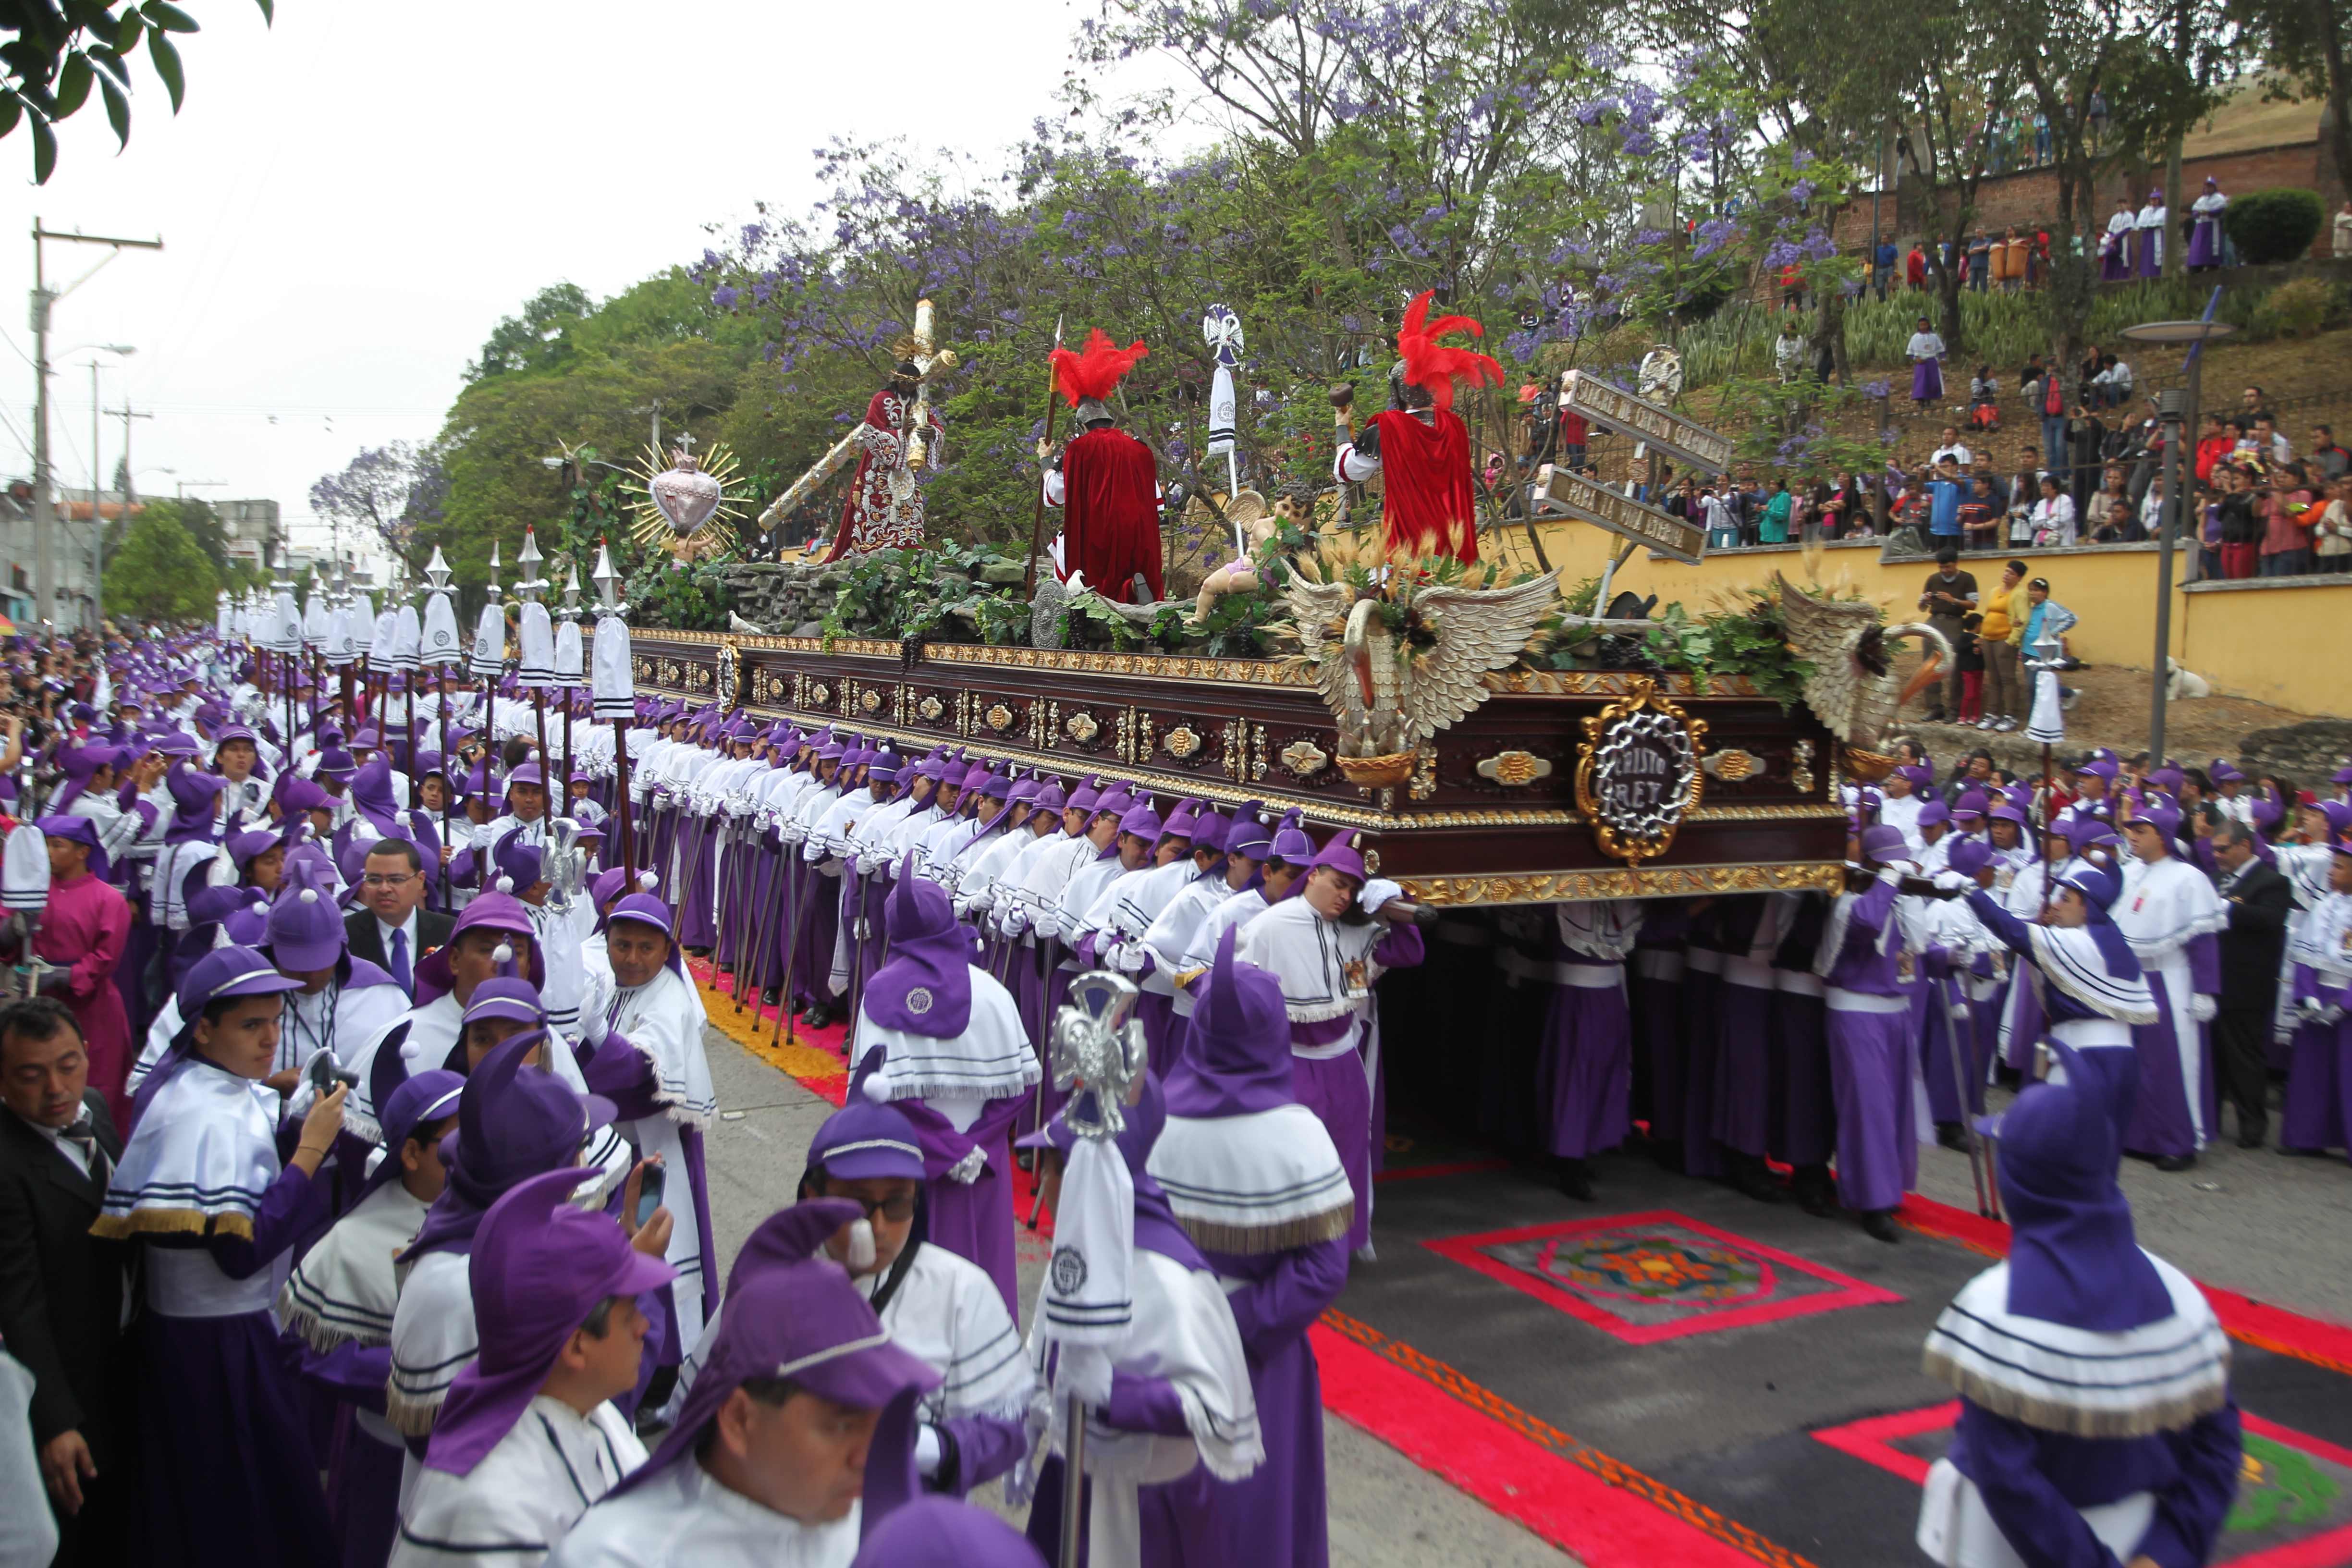 La elaboración de alfombras para el paso de las procesiones son uno de los principales atractivos de la Semana Santa en Guatemala. (Foto HemerotecaPL)